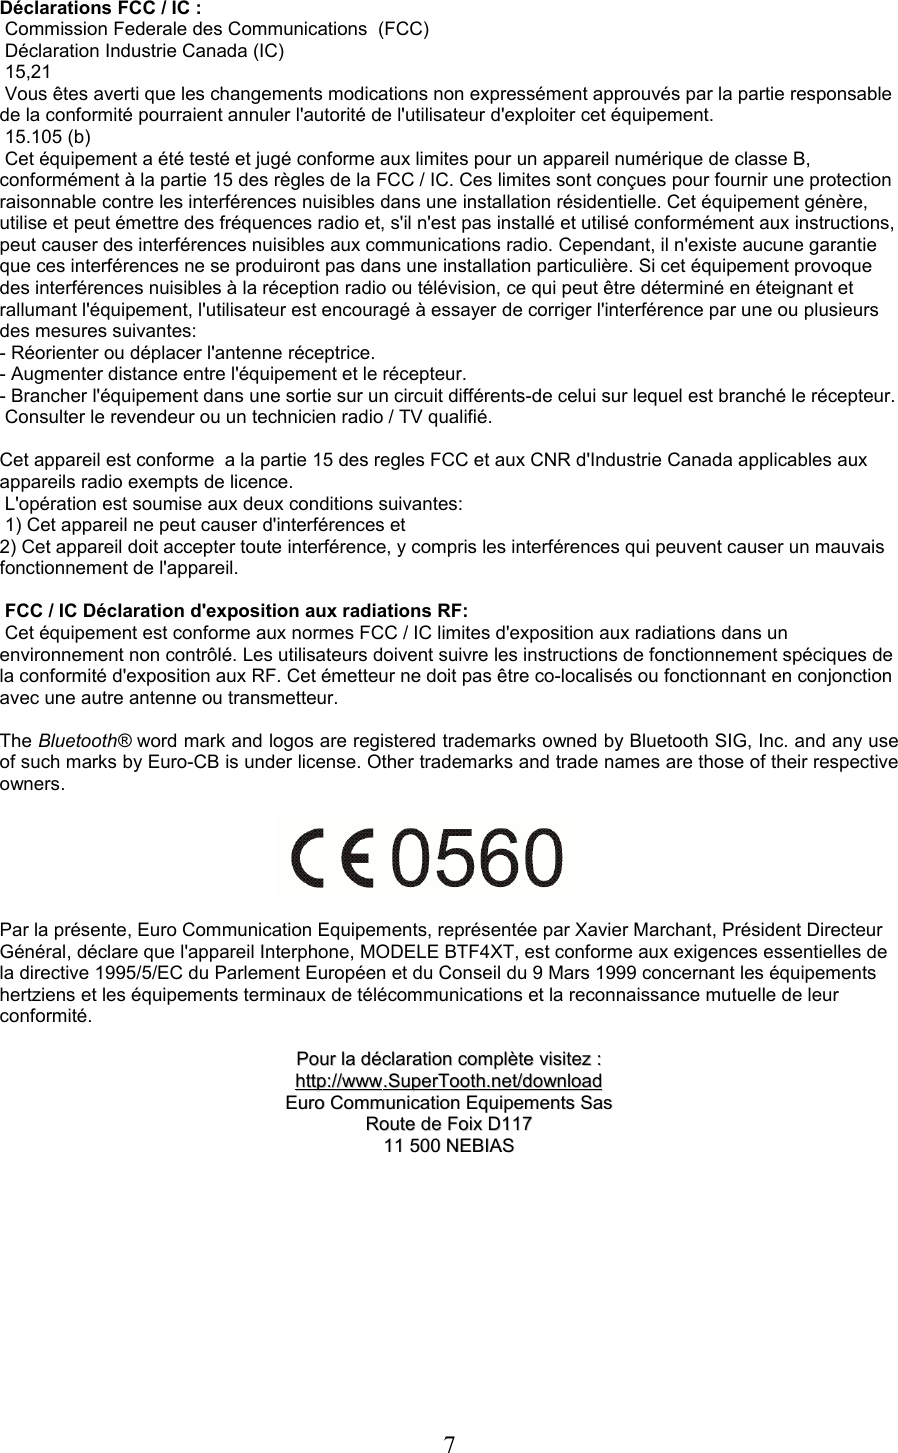 Déclarations FCC / IC : Commission Federale des Communications  (FCC) Déclaration Industrie Canada (IC)  15,21 Vous êtes averti que les changements modications non expressément approuvés par la partie responsable de la conformité pourraient annuler l&apos;autorité de l&apos;utilisateur d&apos;exploiter cet équipement. 15.105 (b) Cet équipement a été testé et jugé conforme aux limites pour un appareil numérique de classe B, conformément à la partie 15 des règles de la FCC / IC. Ces limites sont conçues pour fournir une protection raisonnable contre les interférences nuisibles dans une installation résidentielle. Cet équipement génère, utilise et peut émettre des fréquences radio et, s&apos;il n&apos;est pas installé et utilisé conformément aux instructions, peut causer des interférences nuisibles aux communications radio. Cependant, il n&apos;existe aucune garantie que ces interférences ne se produiront pas dans une installation particulière. Si cet équipement provoque des interférences nuisibles à la réception radio ou télévision, ce qui peut être déterminé en éteignant et rallumant l&apos;équipement, l&apos;utilisateur est encouragé à essayer de corriger l&apos;interférence par une ou plusieurs des mesures suivantes:- Réorienter ou déplacer l&apos;antenne réceptrice.- Augmenter distance entre l&apos;équipement et le récepteur.- Brancher l&apos;équipement dans une sortie sur un circuit différents-de celui sur lequel est branché le récepteur. Consulter le revendeur ou un technicien radio / TV qualifié.Cet appareil est conforme  a la partie 15 des regles FCC et aux CNR d&apos;Industrie Canada applicables aux appareils radio exempts de licence. L&apos;opération est soumise aux deux conditions suivantes: 1) Cet appareil ne peut causer d&apos;interférences et2) Cet appareil doit accepter toute interférence, y compris les interférences qui peuvent causer un mauvais fonctionnement de l&apos;appareil. FCC / IC Déclaration d&apos;exposition aux radiations RF: Cet équipement est conforme aux normes FCC / IC limites d&apos;exposition aux radiations dans un environnement non contrôlé. Les utilisateurs doivent suivre les instructions de fonctionnement spéciques de la conformité d&apos;exposition aux RF. Cet émetteur ne doit pas être co-localisés ou fonctionnant en conjonction avec une autre antenne ou transmetteur.The Bluetooth® word mark and logos are registered trademarks owned by Bluetooth SIG, Inc. and any use of such marks by Euro-CB is under license. Other trademarks and trade names are those of their respective owners.Par la présente, Euro Communication Equipements, représentée par Xavier Marchant, Président Directeur Général, déclare que l&apos;appareil Interphone, MODELE BTF4XT, est conforme aux exigences essentielles de la directive 1995/5/EC du Parlement Européen et du Conseil du 9 Mars 1999 concernant les équipements hertziens et les équipements terminaux de télécommunications et la reconnaissance mutuelle de leur conformité.PourPour  lala  déclarationdéclaration  complètecomplète  visitezvisitez  ::httphttp      ://://      wwwwww      ..    SuperToothSuperTooth      .net/.net/      downloaddownload      EuroEuro  CommunicationCommunication  EquipementsEquipements  SasSasRouteRoute  dede  FoixFoix  DD11711711 500 11 500 NEBIASNEBIAS7